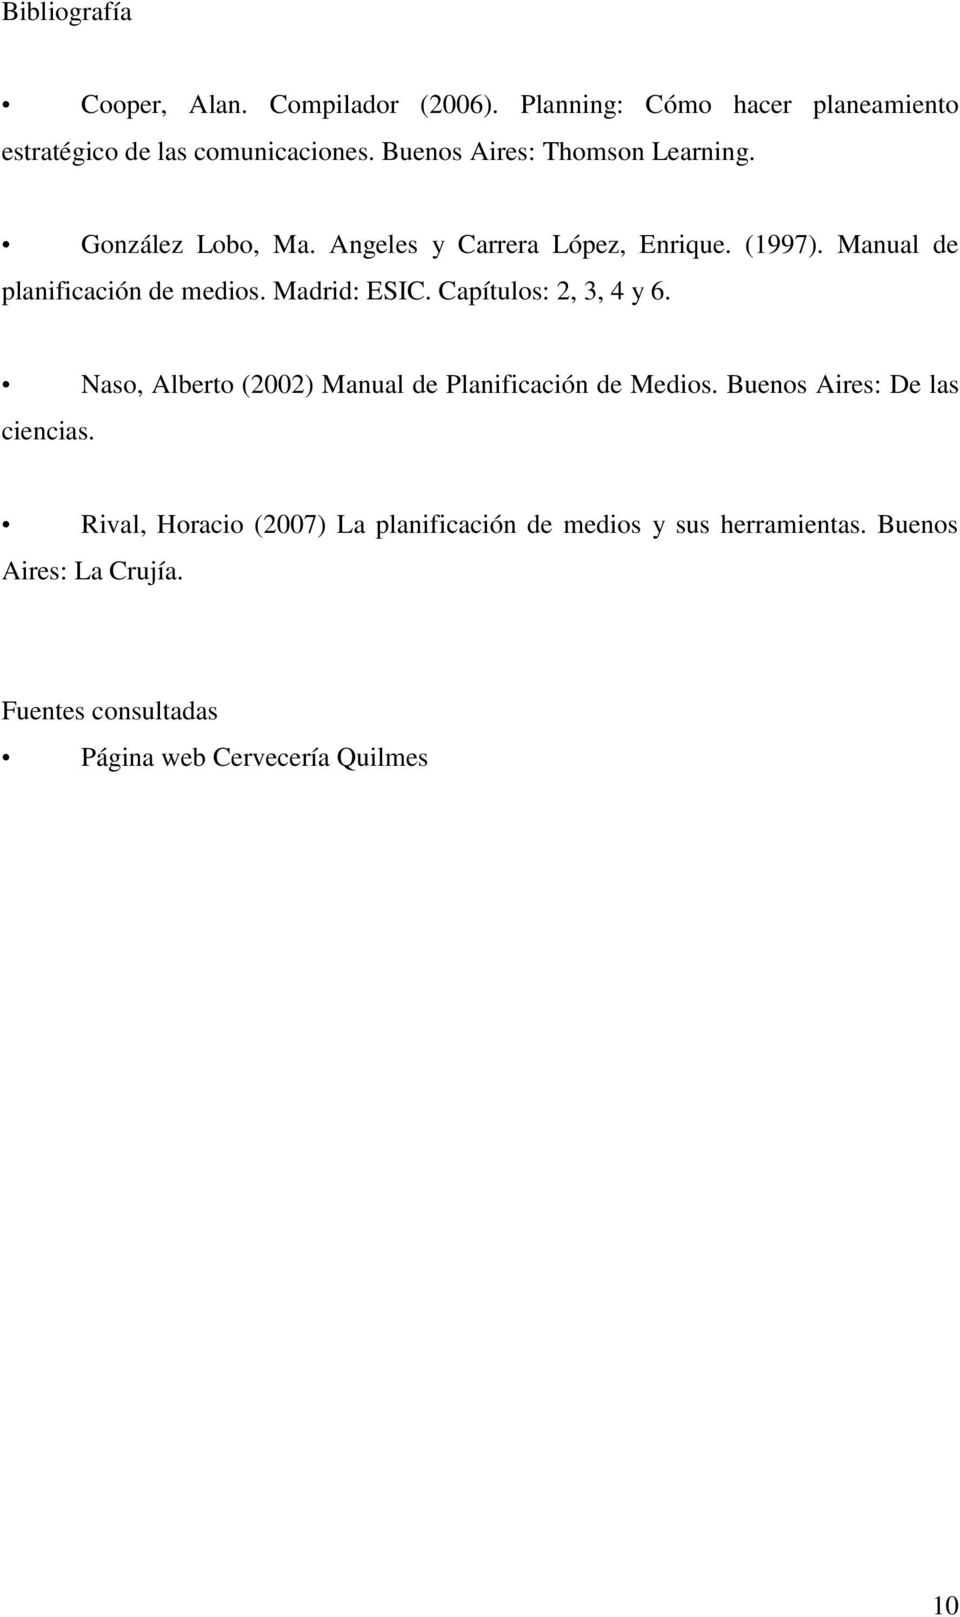 Madrid: ESIC. Capítulos: 2, 3, 4 y 6. Naso, Alberto (2002) Manual de Planificación de Medios. Buenos Aires: De las ciencias.